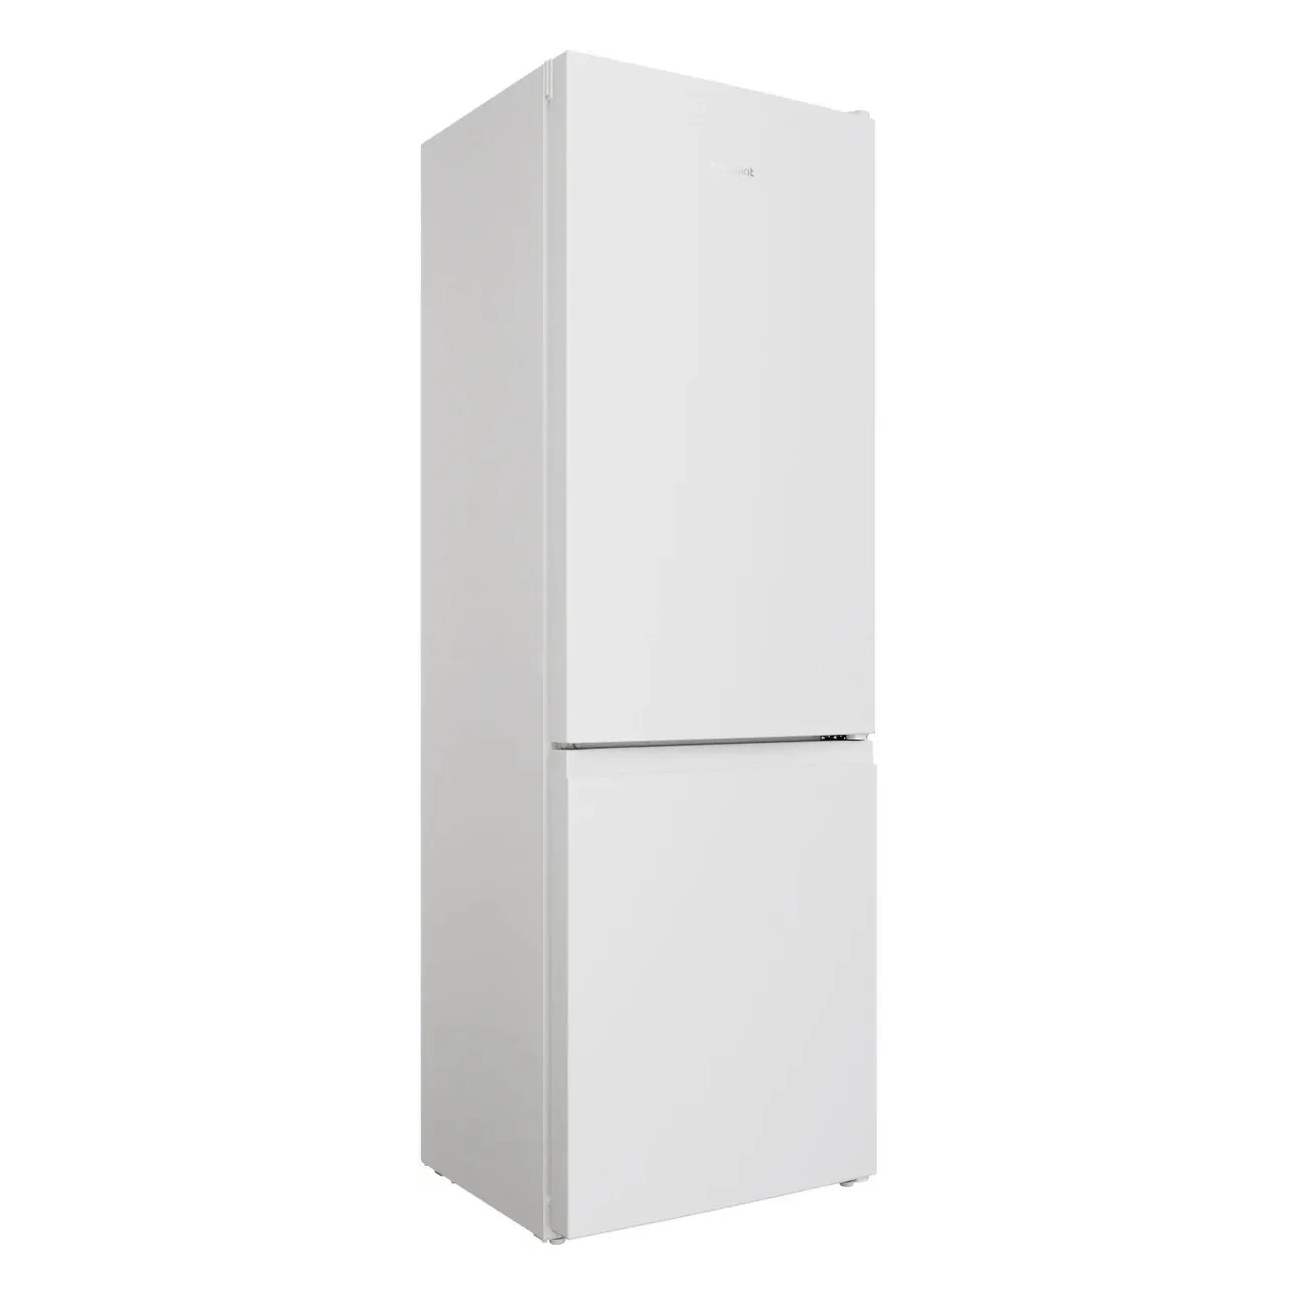 Холодильник HotPoint HT 4180 W белый, серебристый холодильник side by side hotpoint hfts 640 x